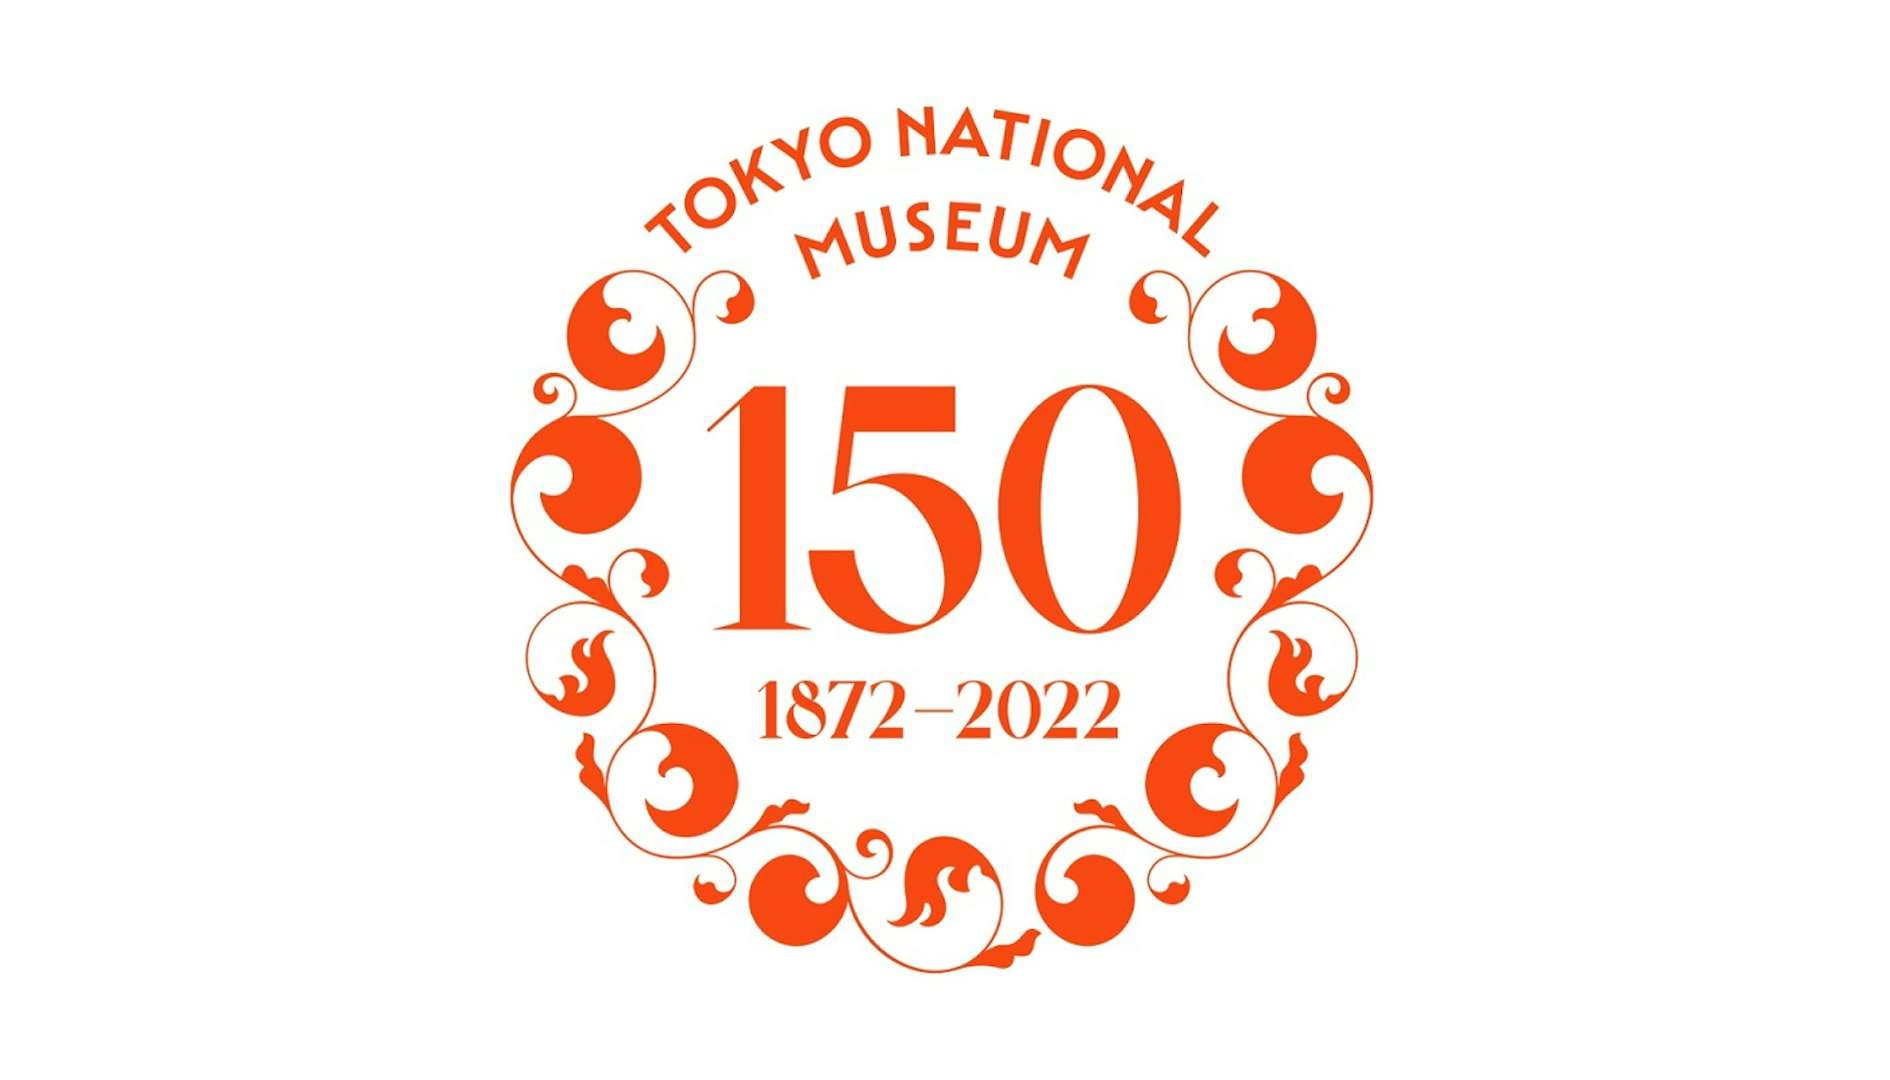 東博が創立150周年記念事業を発表。所蔵する国宝89件すべてを展示する